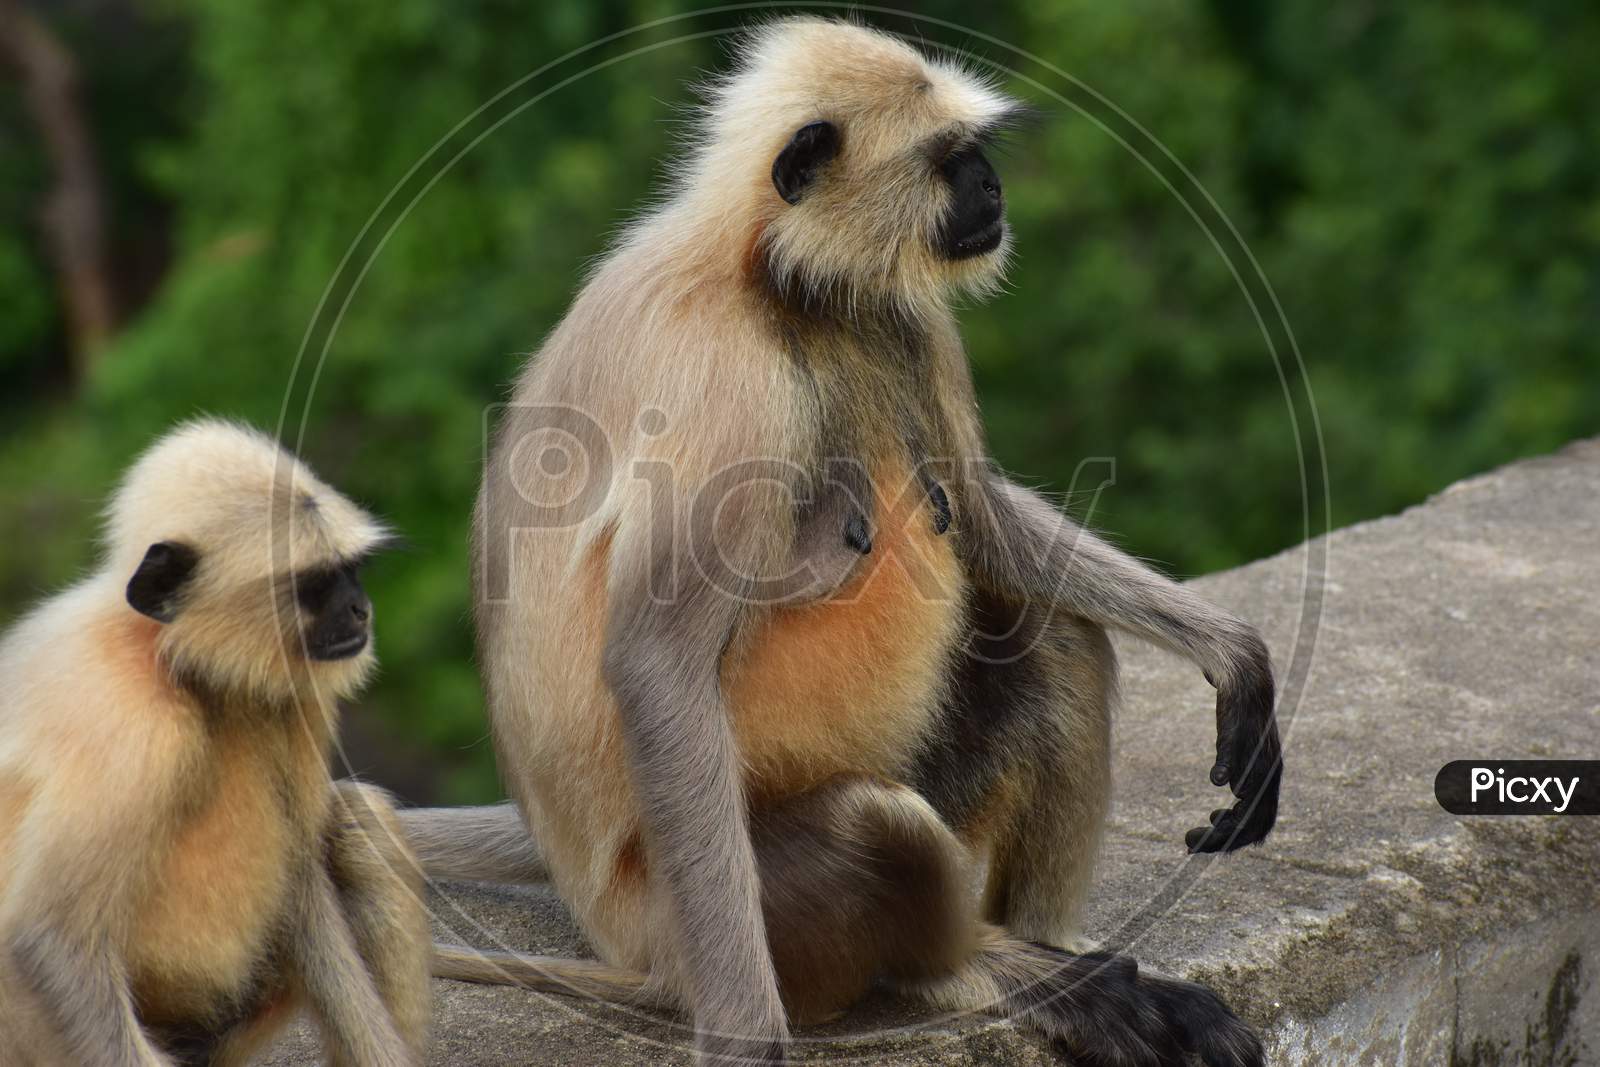 macaque/monkey